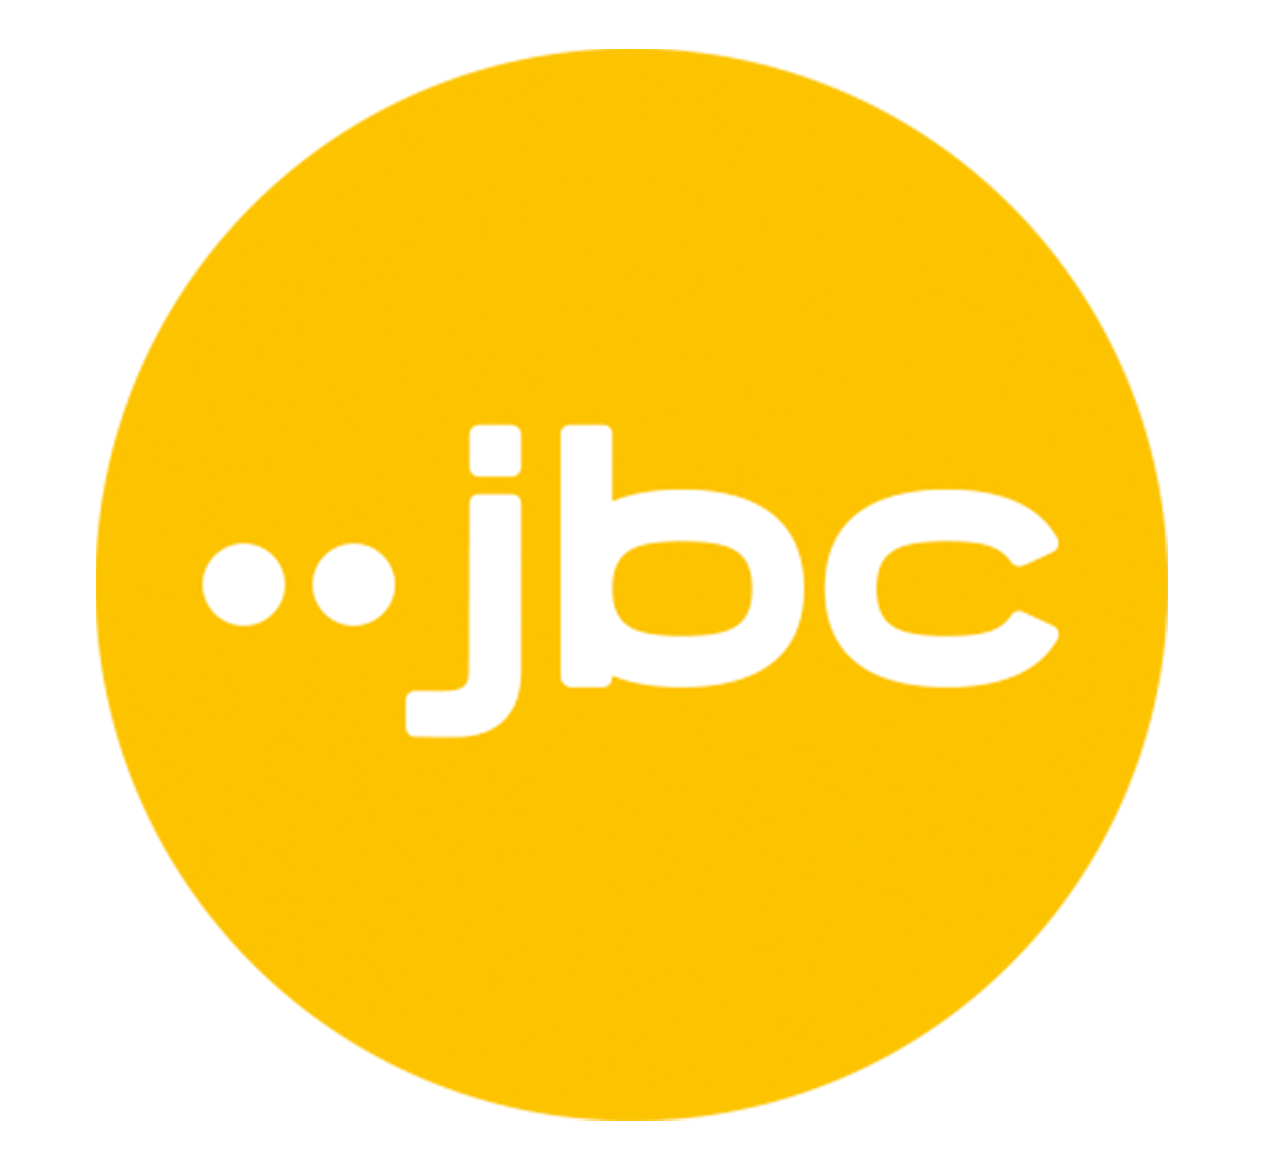 JBC Logo